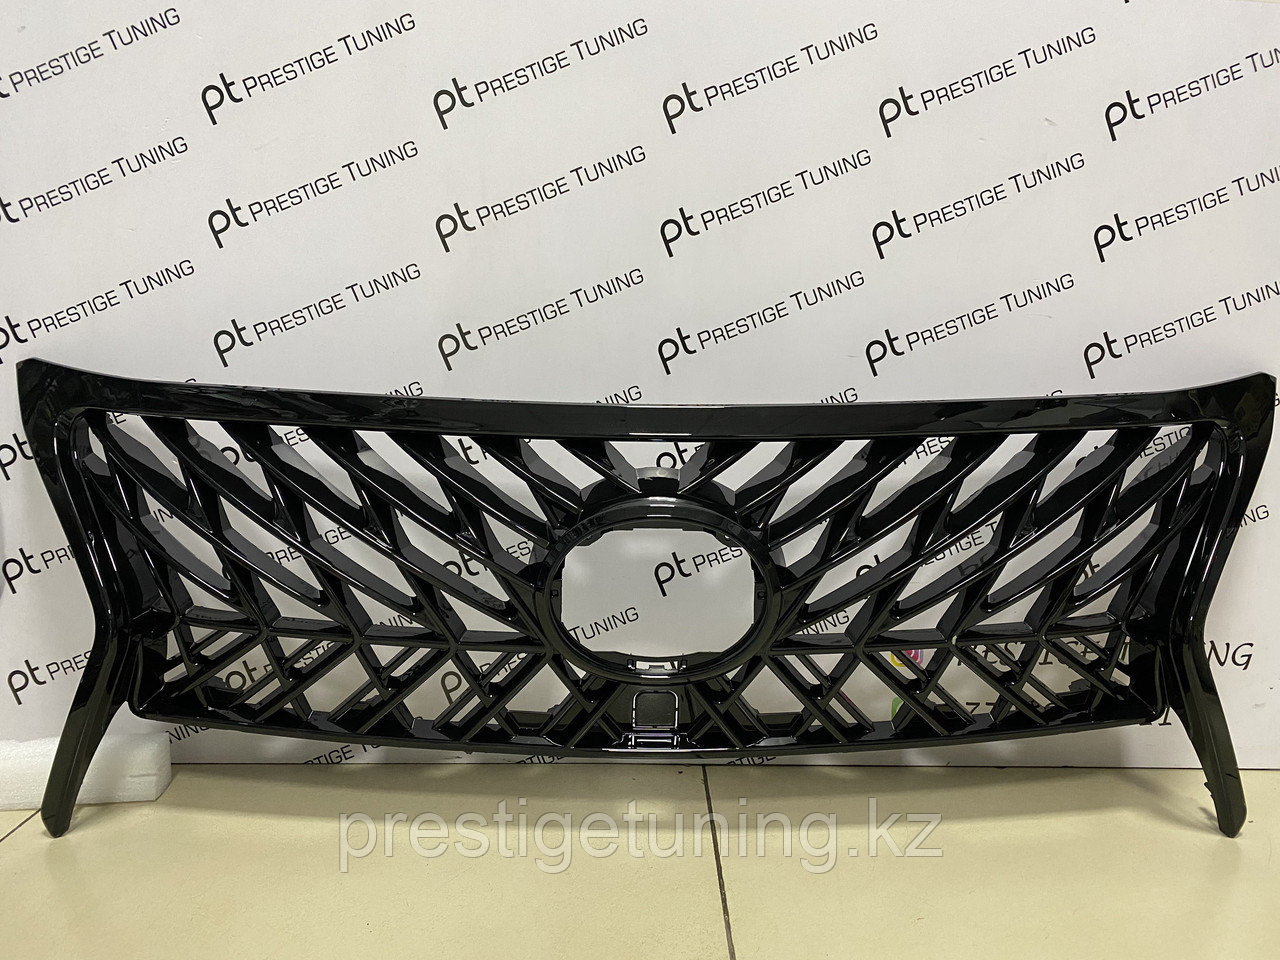 Решетка радиатора на Lexus LX570 2012-15 год стиль Superior с черной окантовкой, фото 1